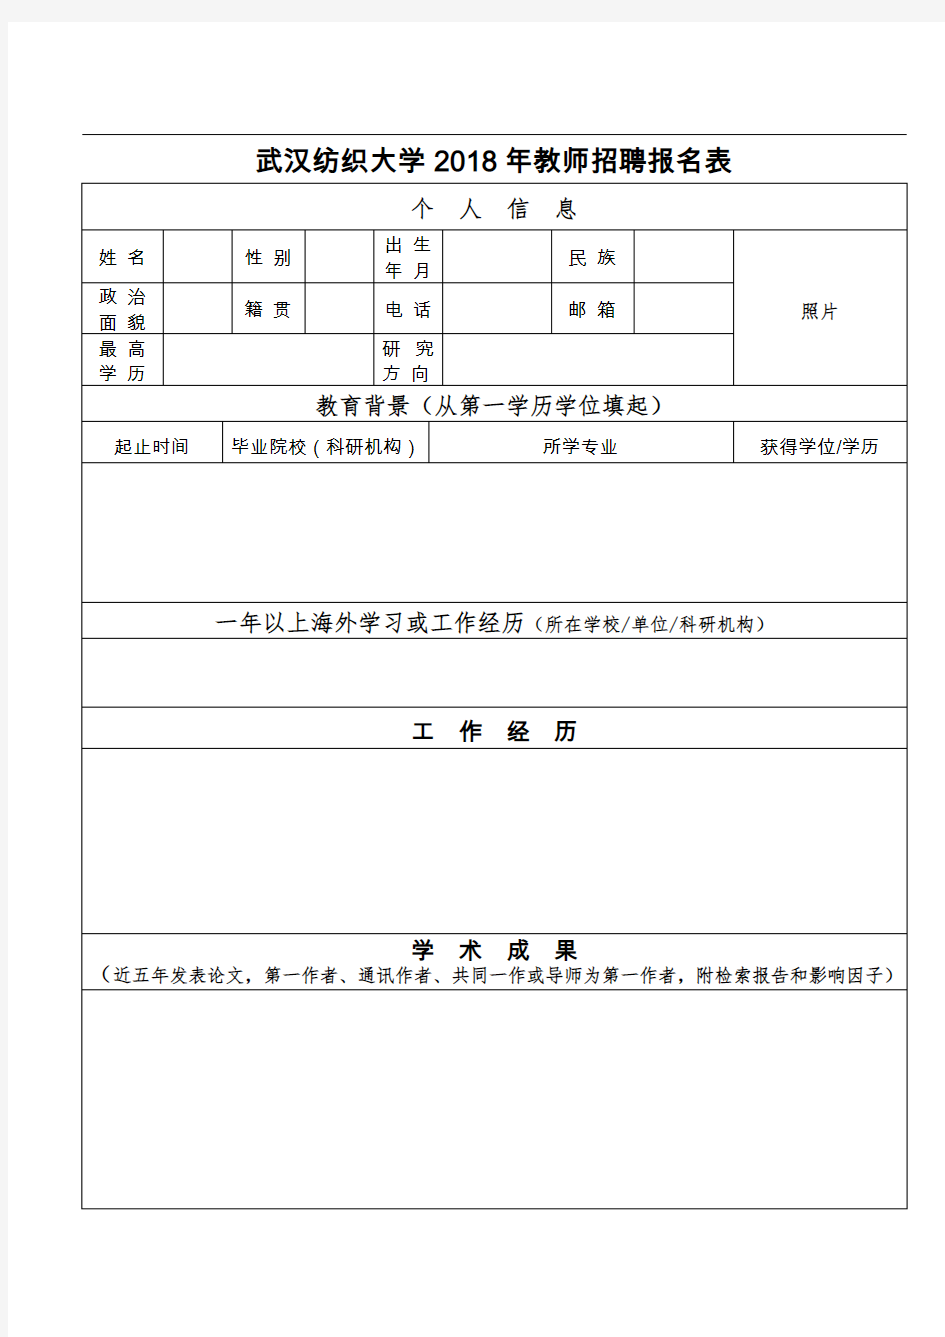 武汉纺织大学2018年教师招聘报名表